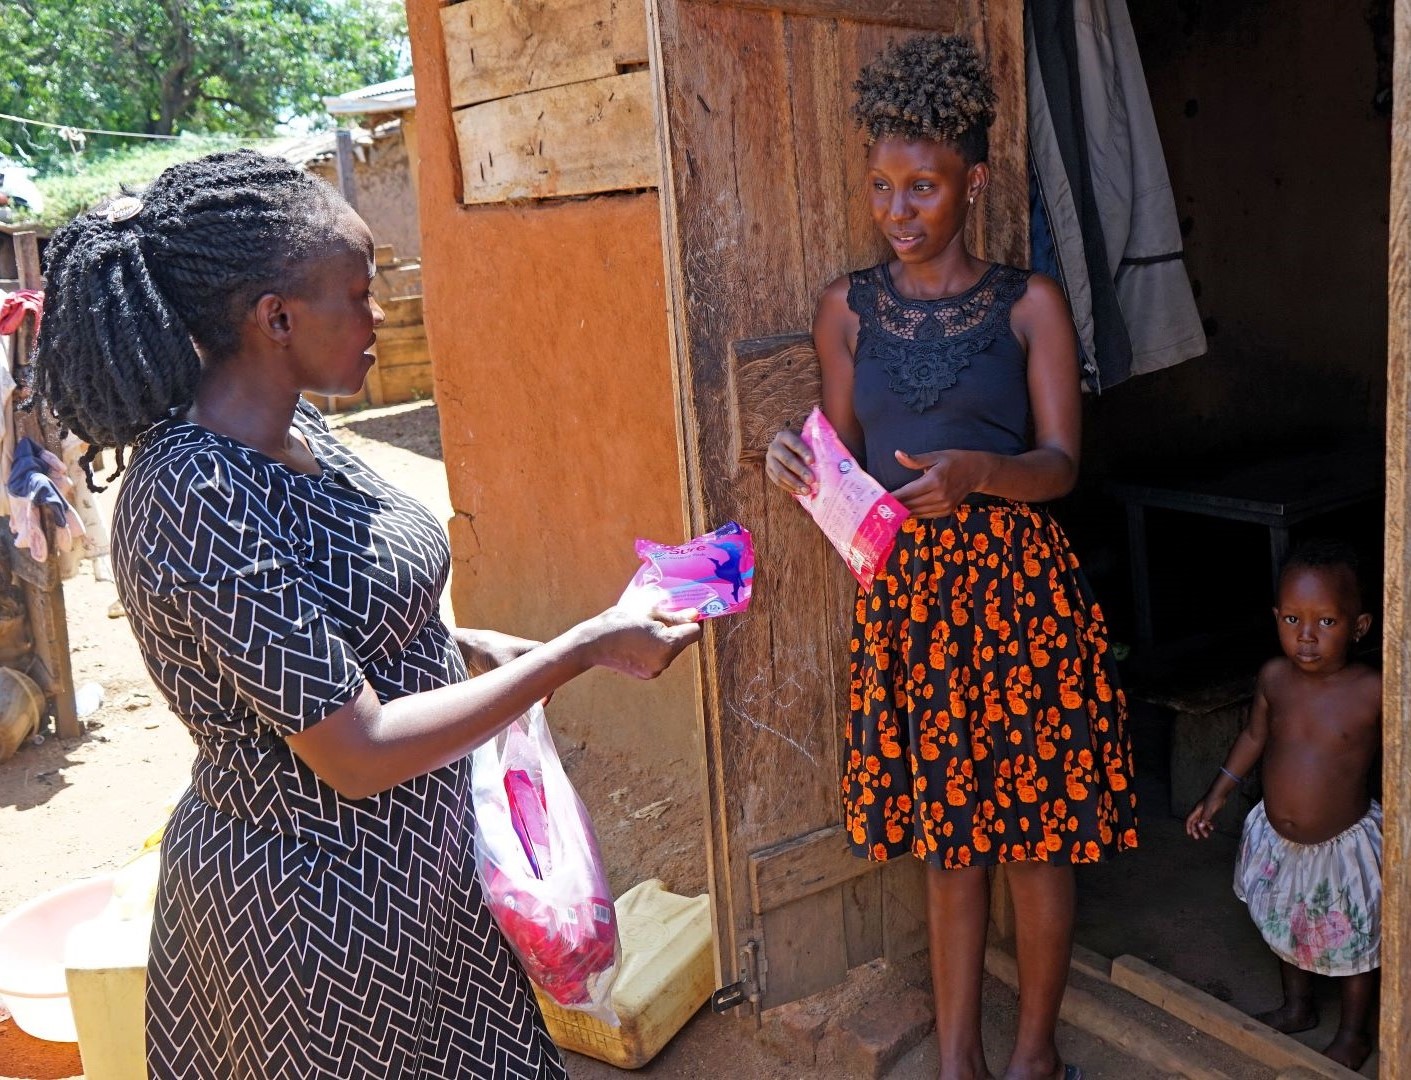 Zwei Frauen an einer offenen Haustür, die eine reicht der anderen ein pinkfarbenes Päckchen. Neben der Frau im Türrahmen steht noch ein Kleinkind.